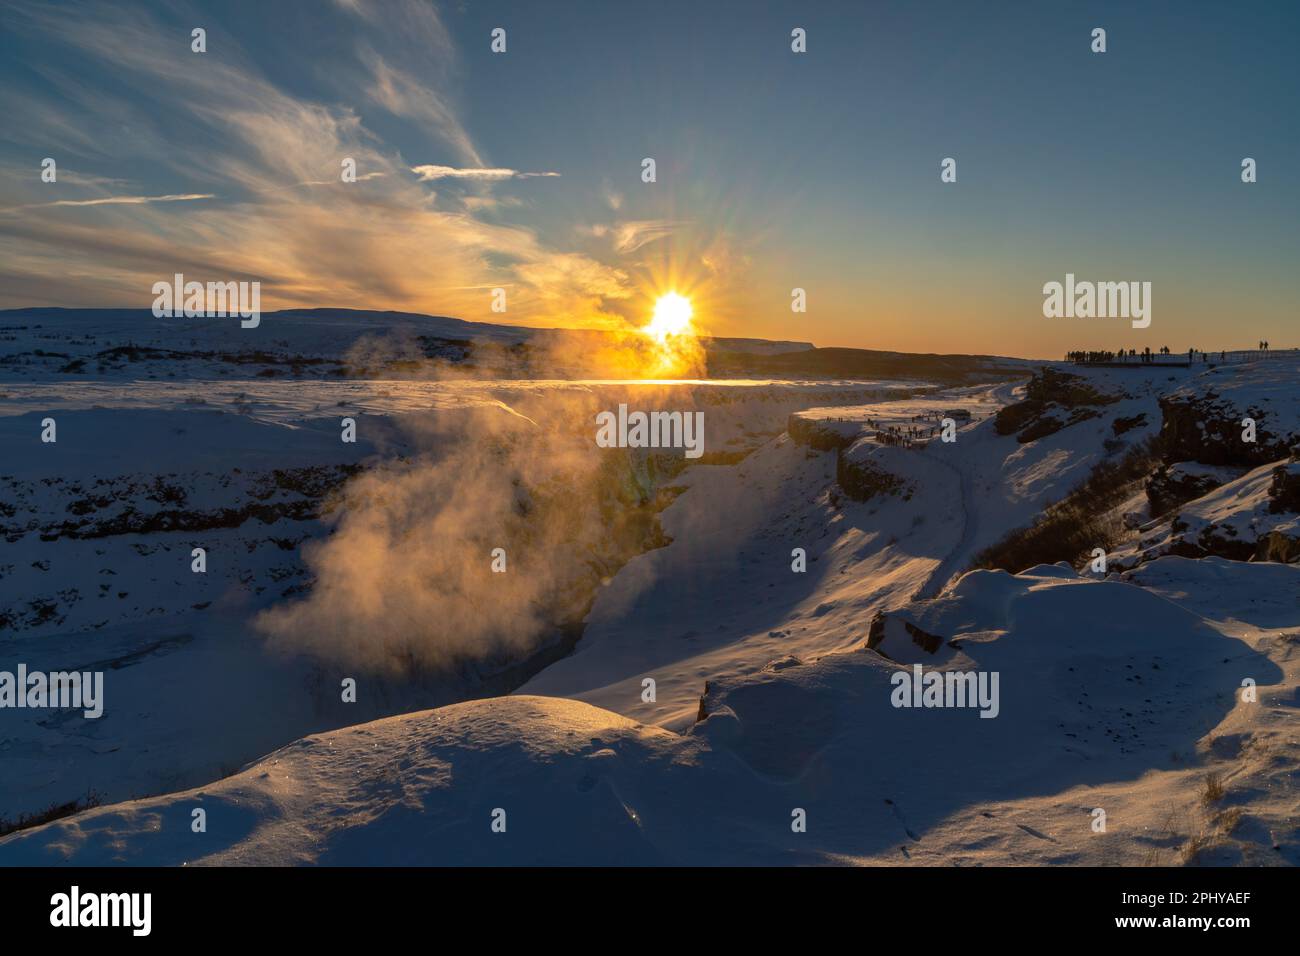 Der doppelte Wasserfall von Gullfoss, geformt durch den Bruch der tektonischen Platten, beleuchtet durch die ersten Strahlen der Morgensonne, die den Nebel erhellen Stockfoto